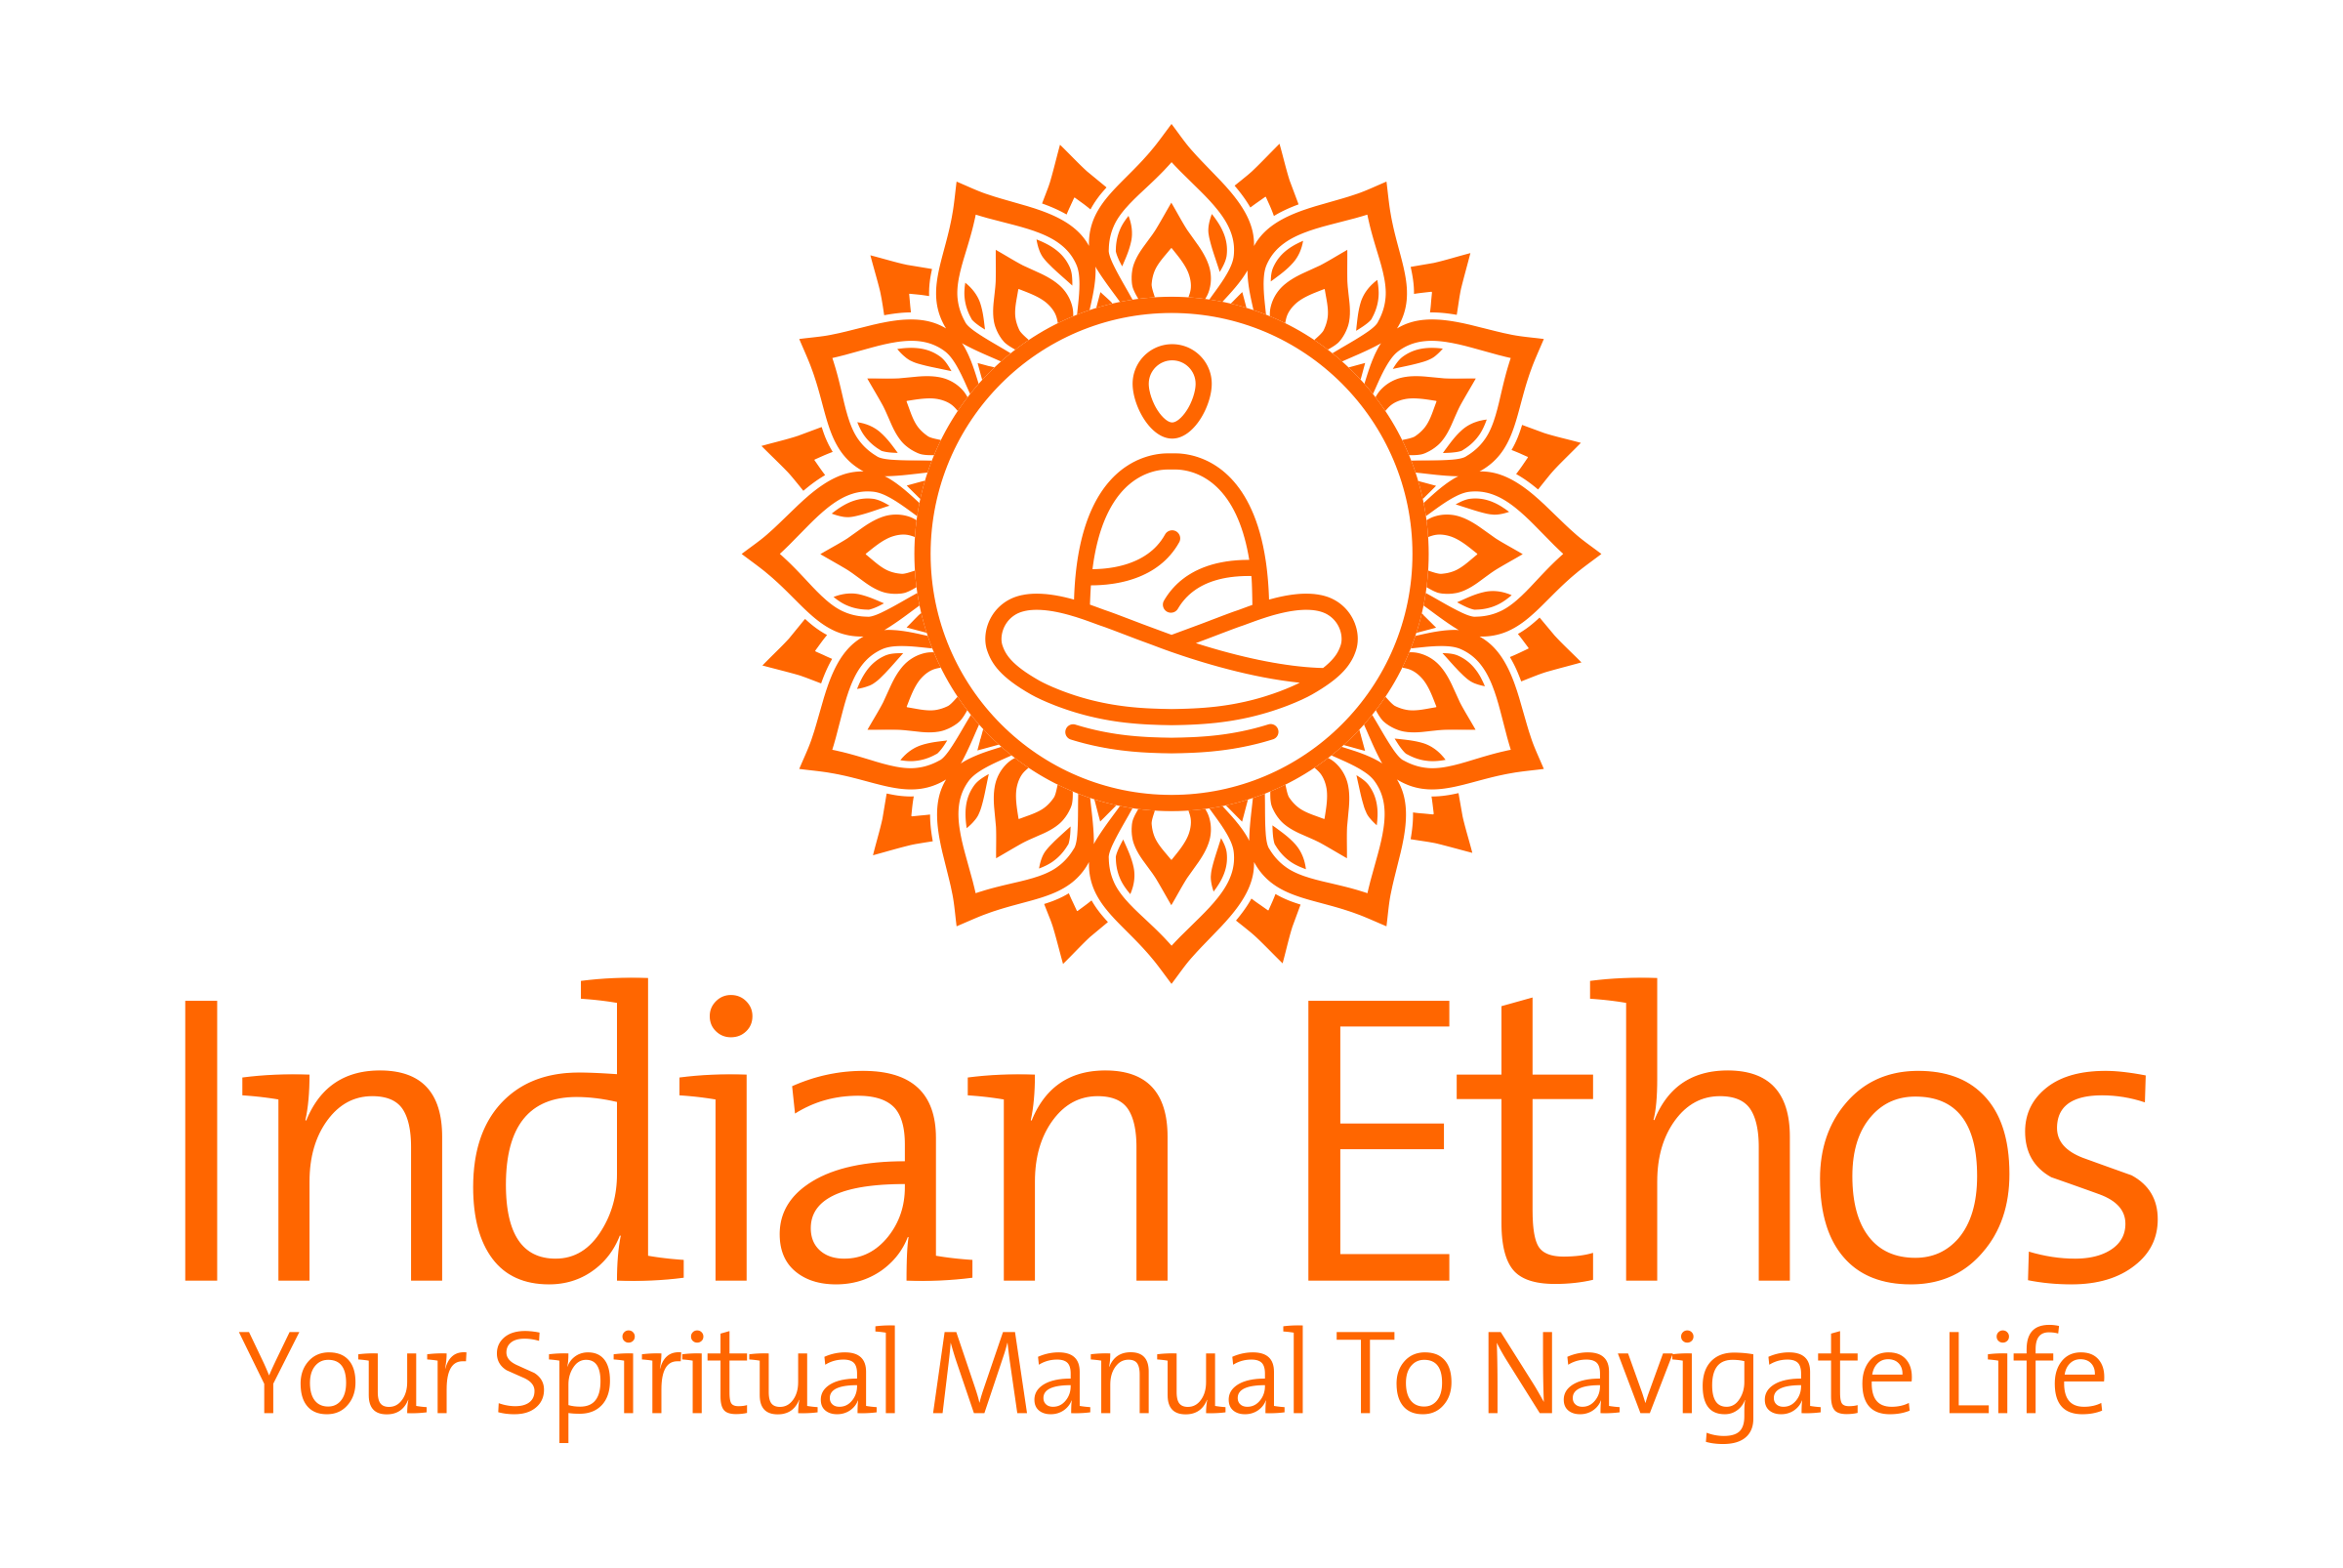 INDIAN ETHOS